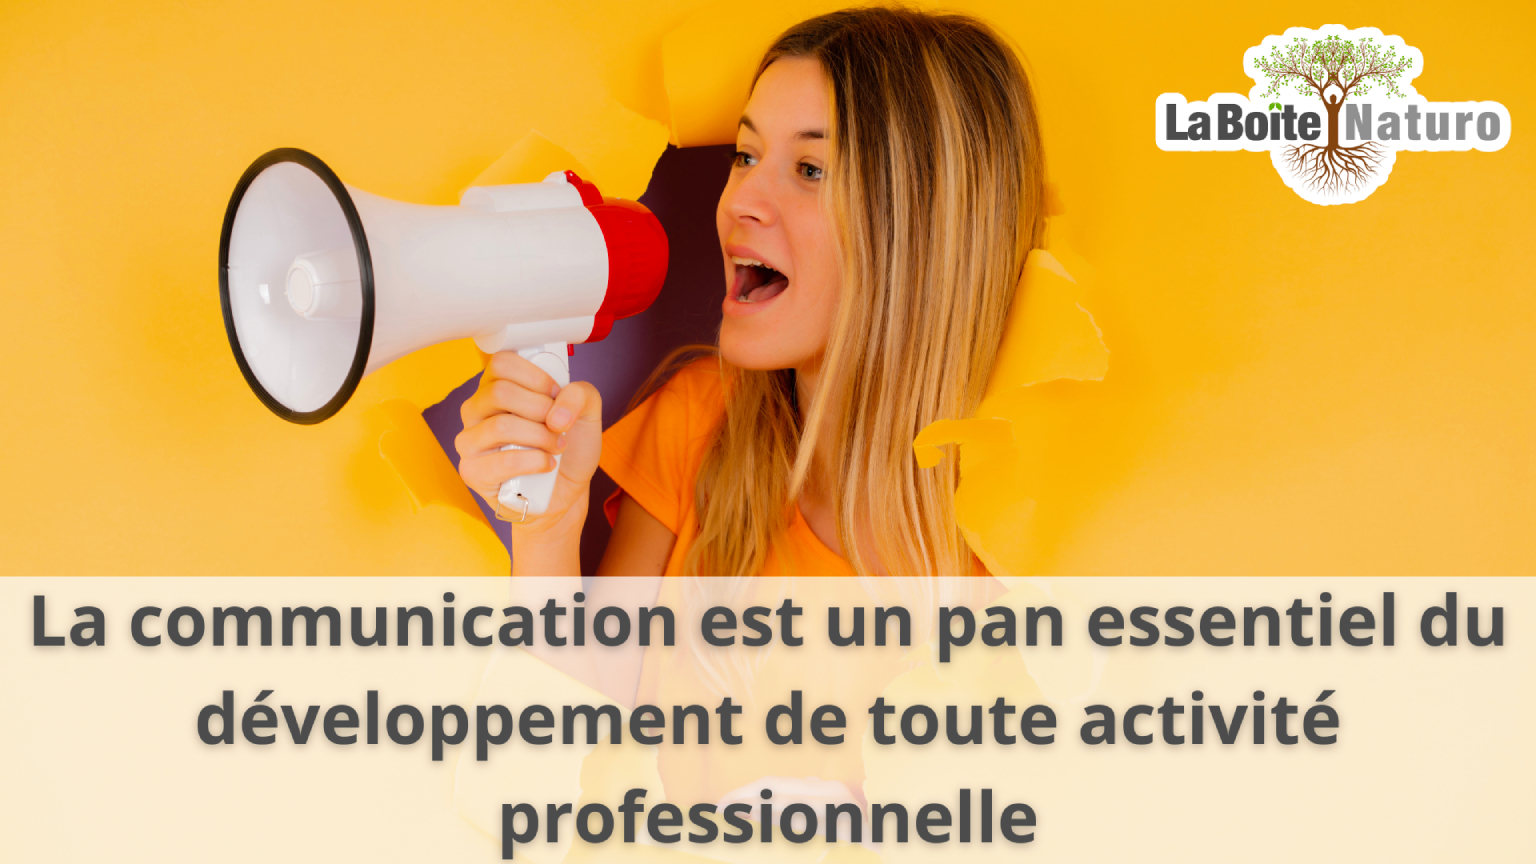 La communication est un pan essentiel du développement de toute activité professionnelle